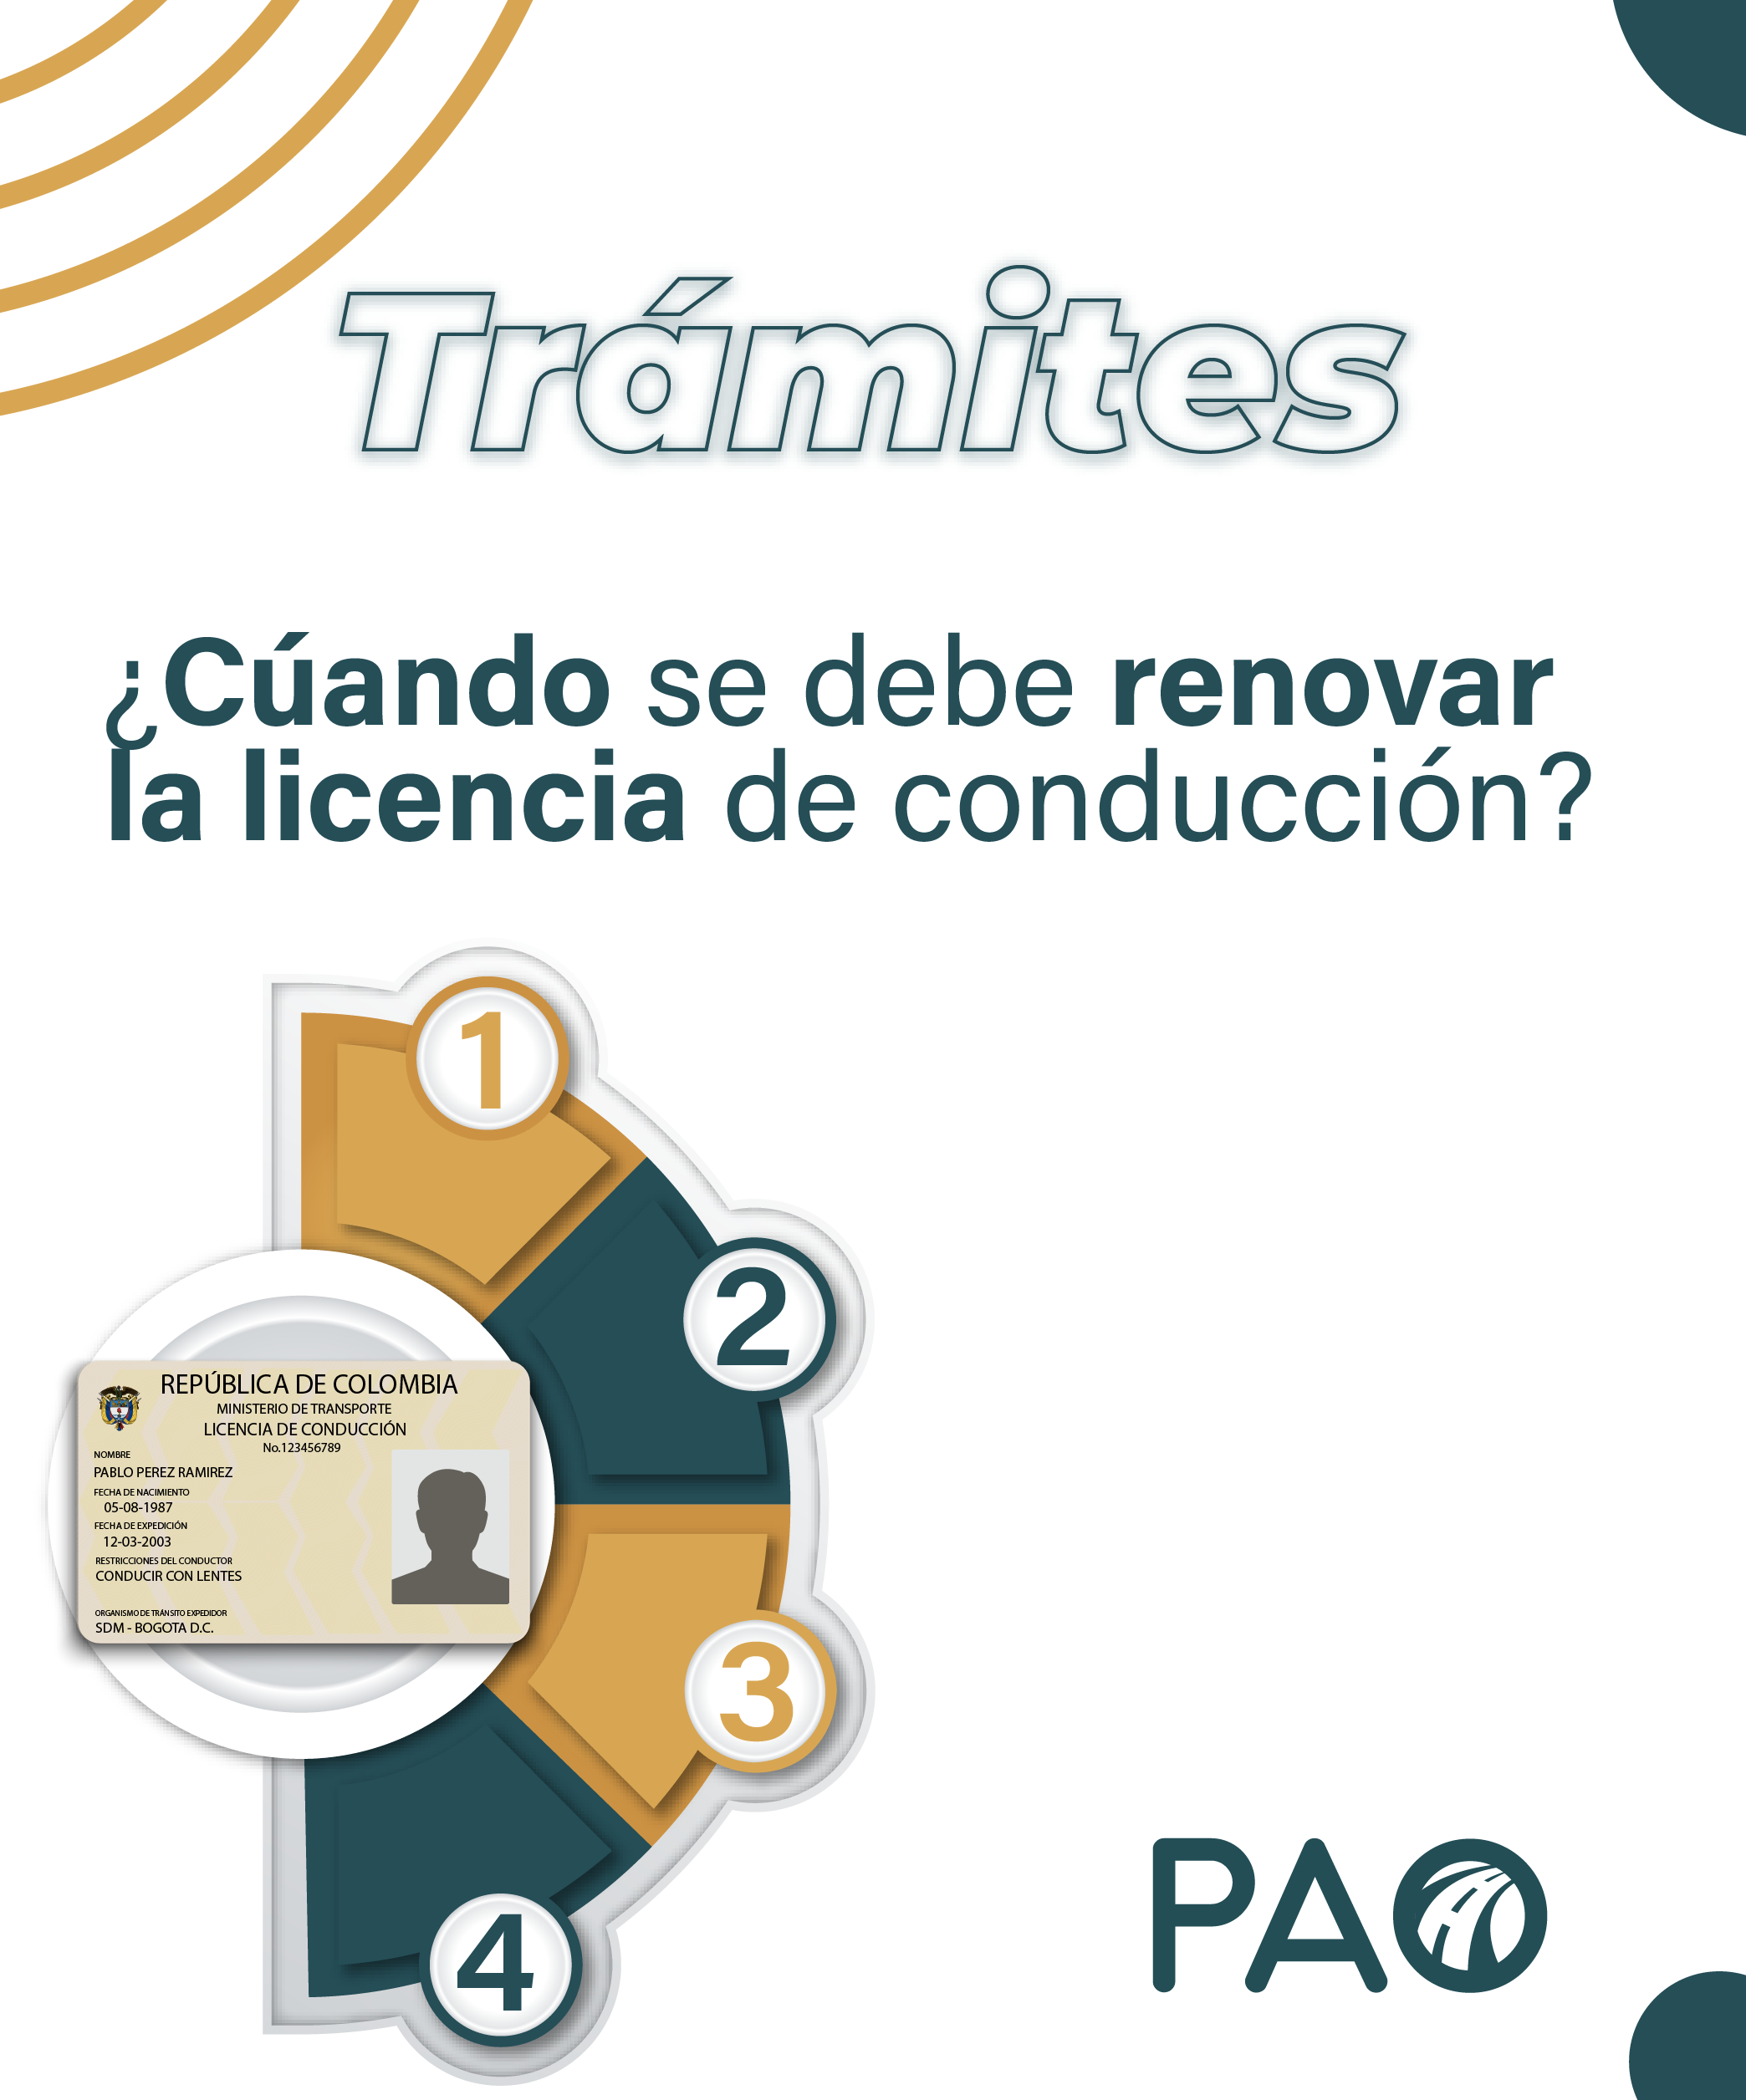 Nueva medida para la renovación de la licencia en Colombia